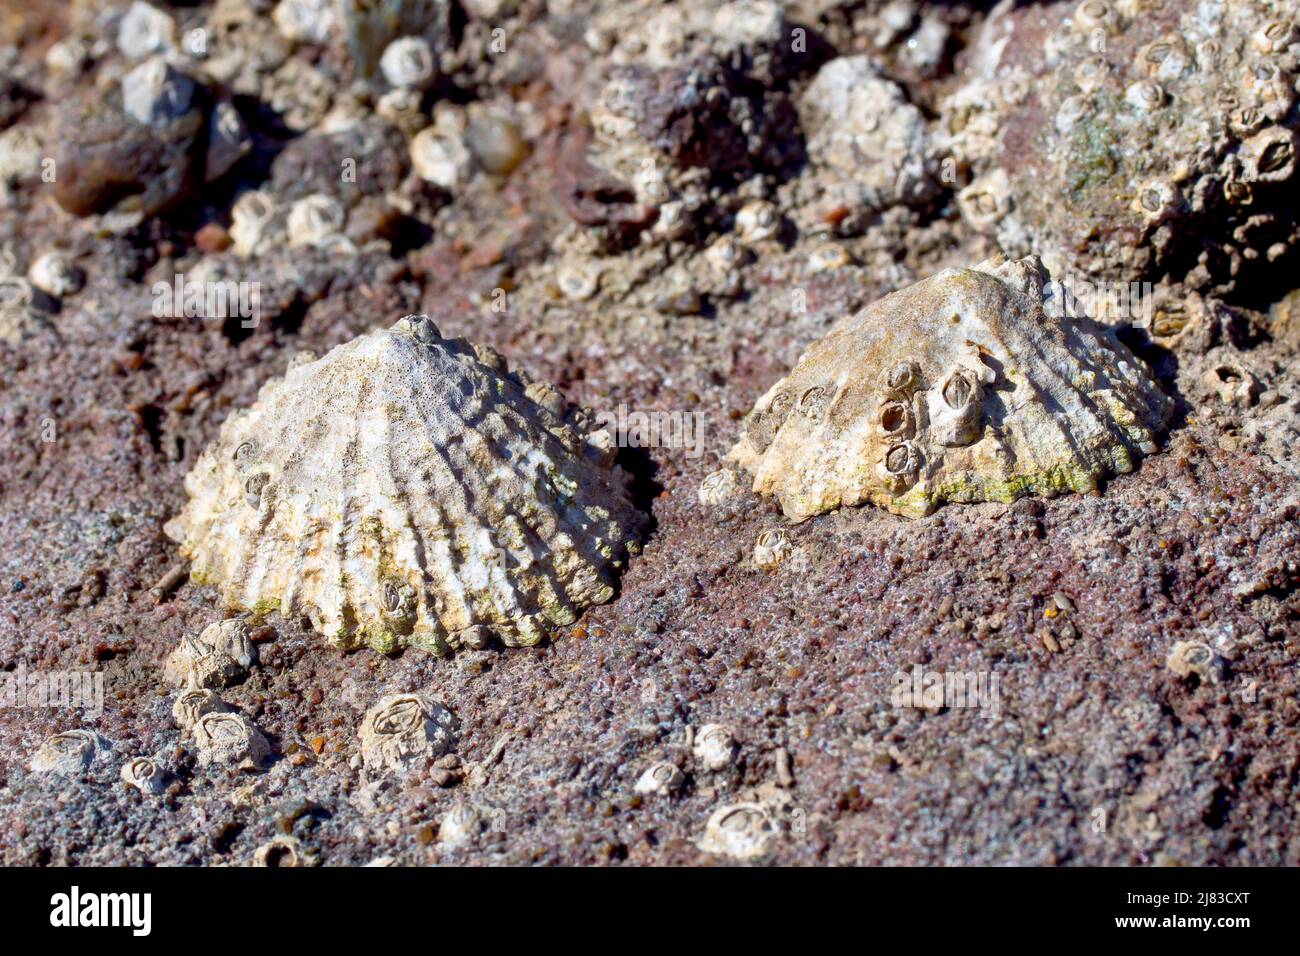 Primo piano di due limpet (rotula vulgata) attaccate ad una roccia di arenaria rossa sulla spiaggia a bassa marea. Foto Stock